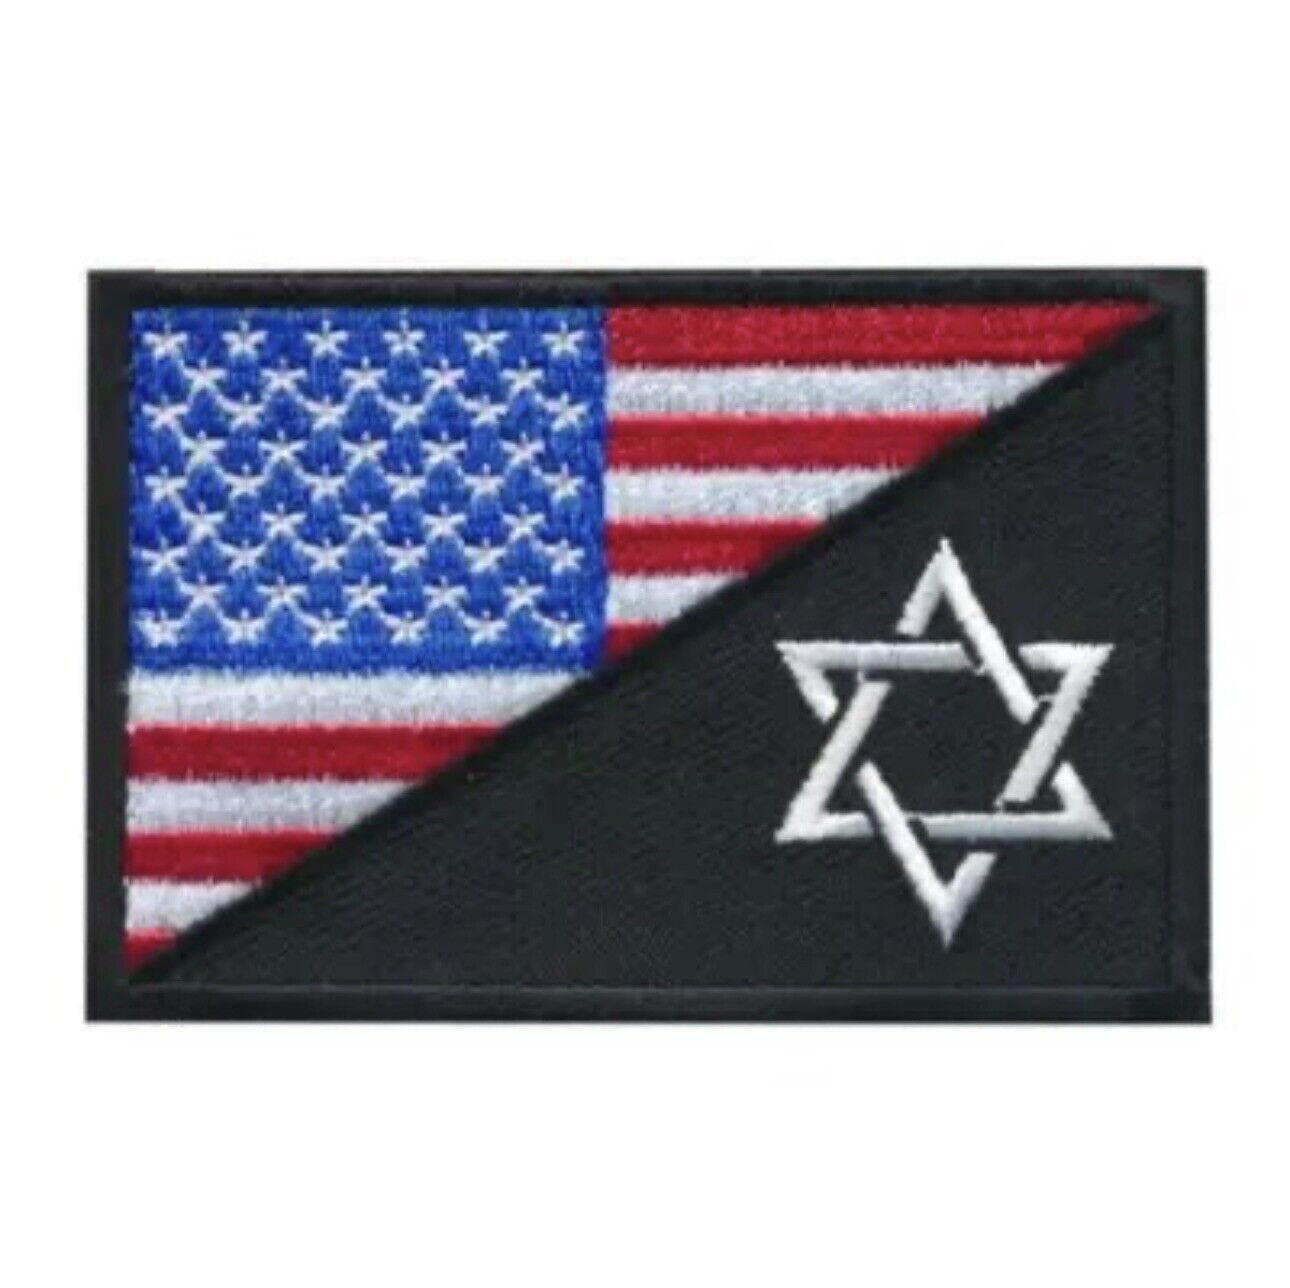 Israeli & American National Flag Patch (Hook & Loop)